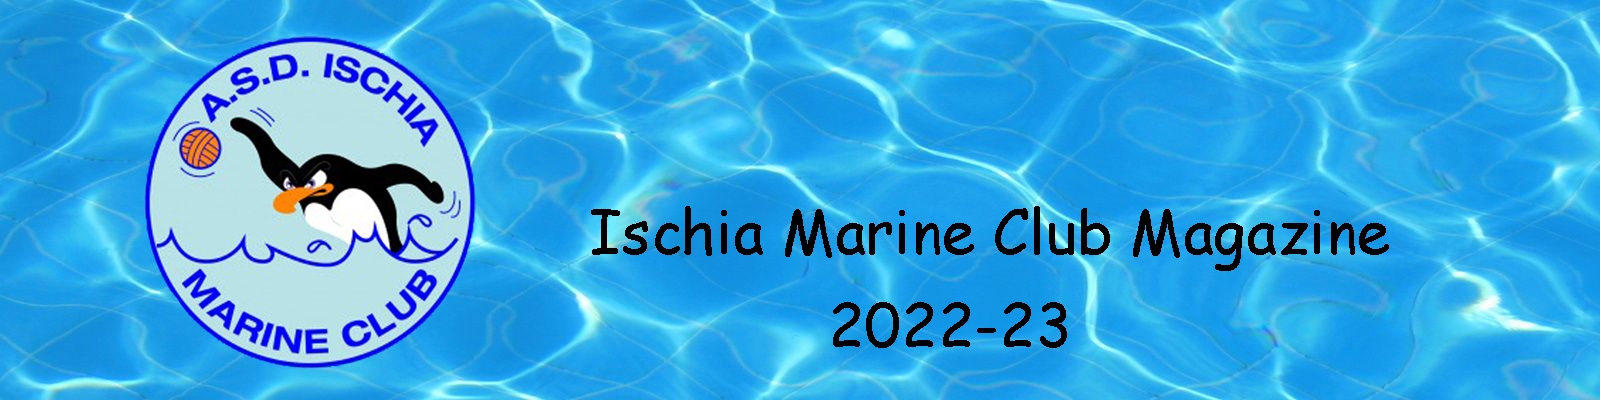 Ischia Marine Club Magazine anno 2022-23